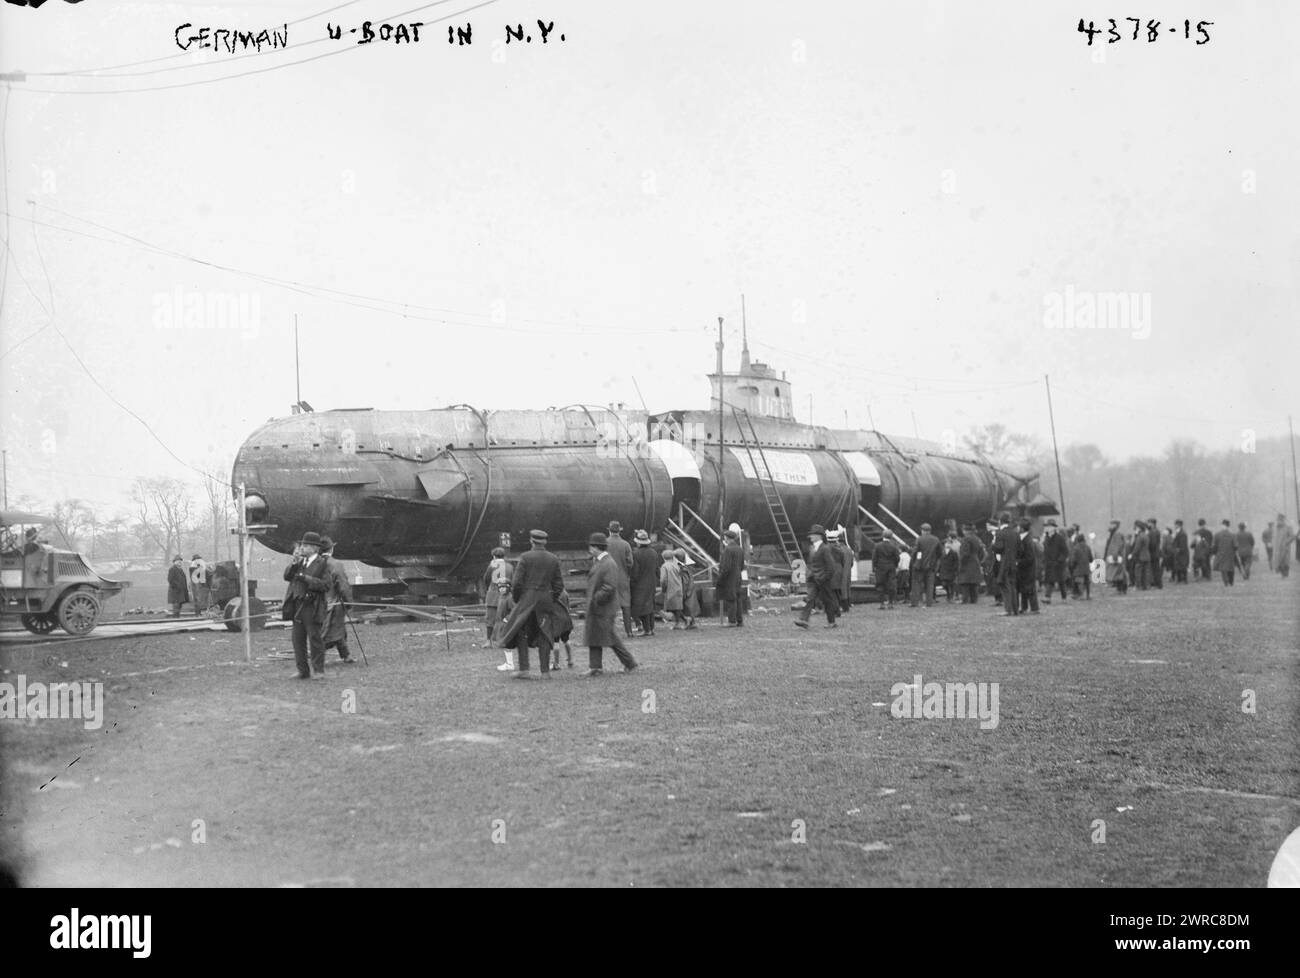 U-boat allemand à New York, la photographie montre le SM UC-5, un sous-marin allemand de type UC I mouilleur de mines (U-boat) capturé par les Alliés, apporté à New York et renommé U-Buy-a-Bond. Le sous-marin, montré à Central Park, a participé à la Liberty Loan Parade à New York le 25 octobre 1917, 1917, Guerre mondiale, 1914-1918, négatifs en verre, 1 négatif : verre Banque D'Images